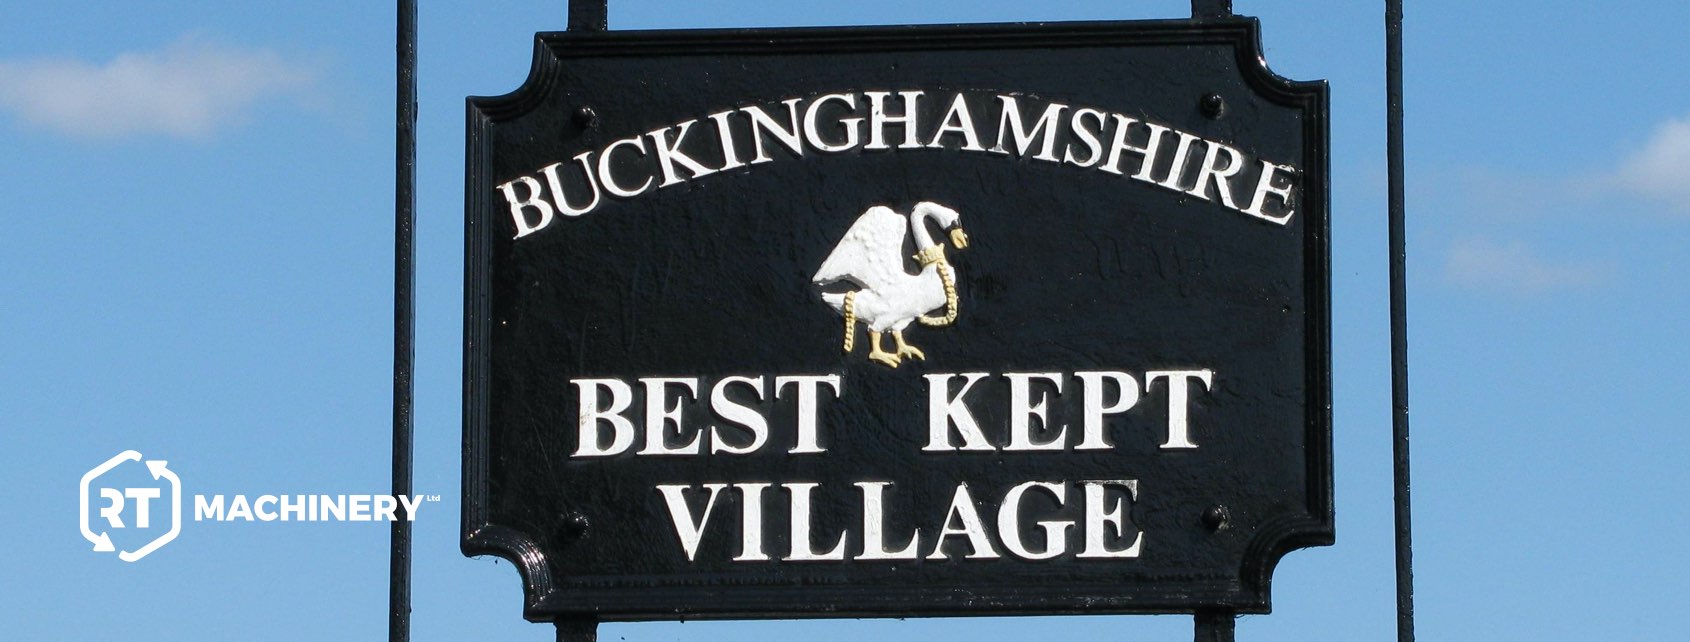 Buckinghamshire's Best Kept Village